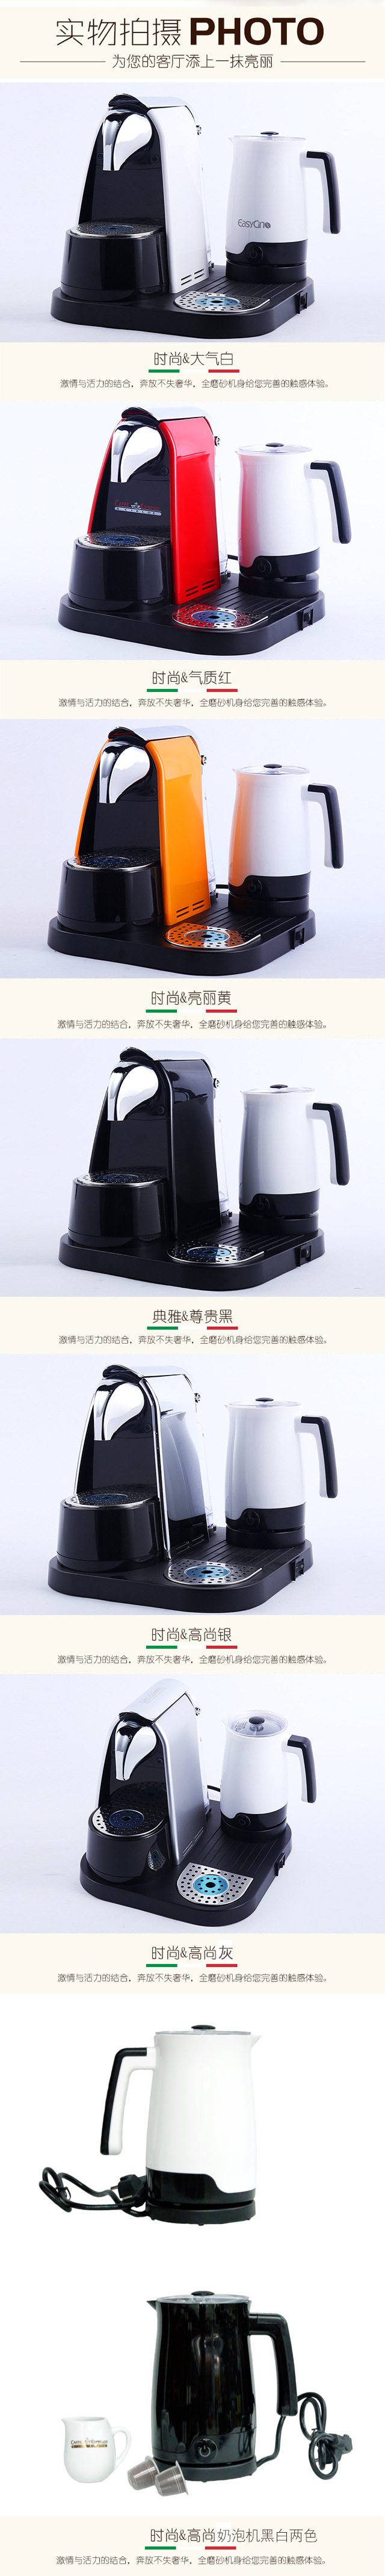 批发意大利胶囊咖啡机 外贸办公室商用奶泡机便捷半自动咖啡机